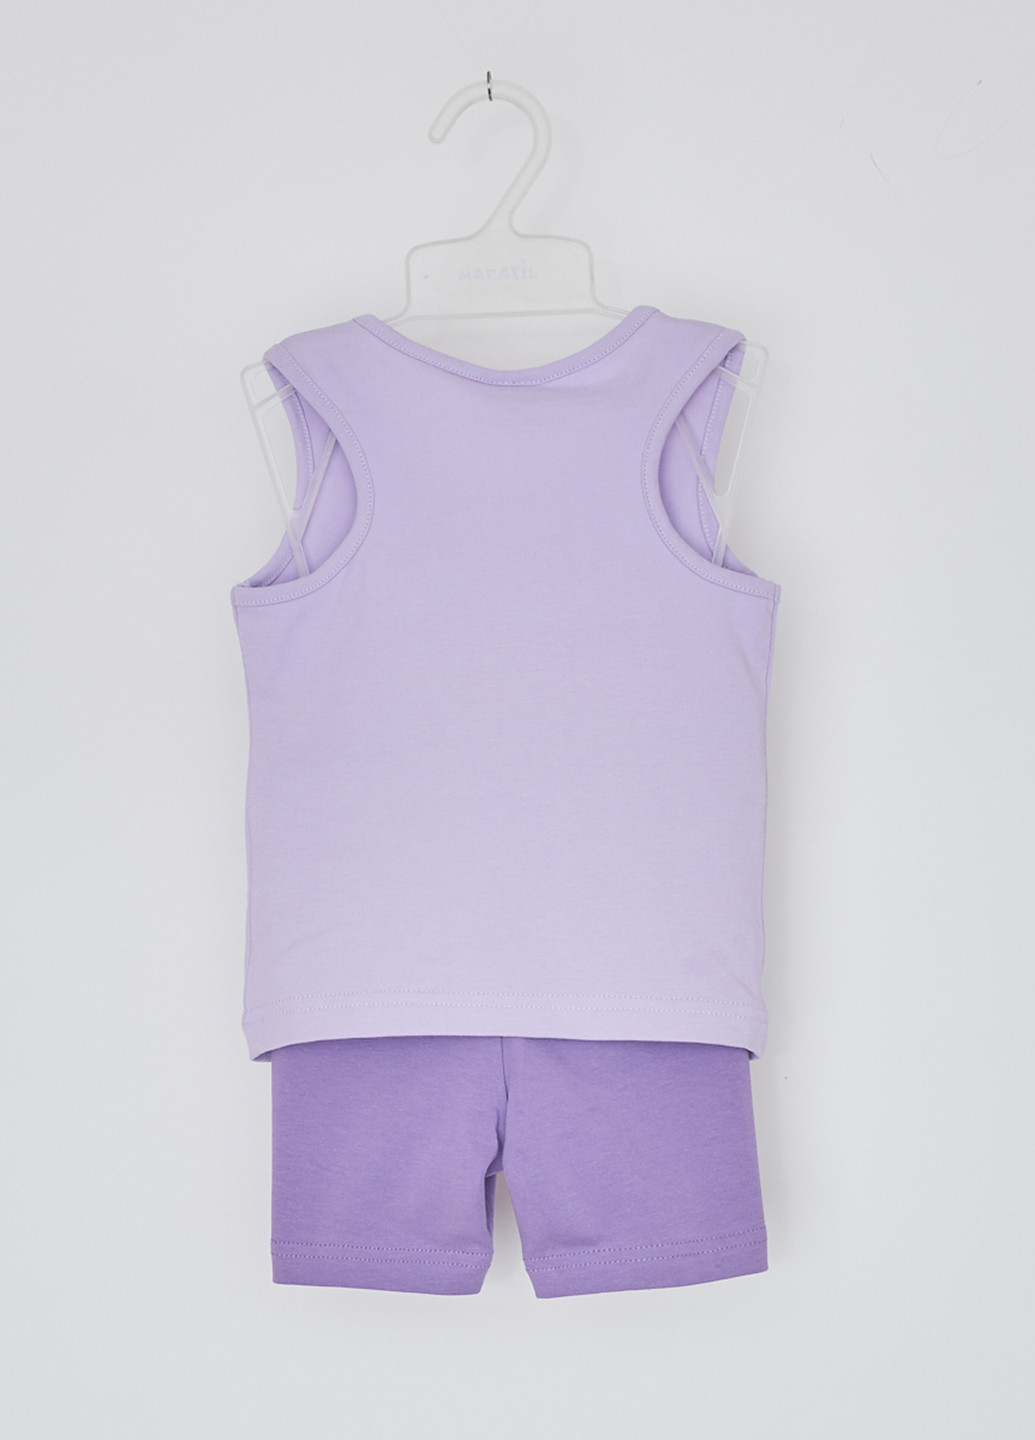 Светло-фиолетовый летний комплект (майка, шорты) Sprint